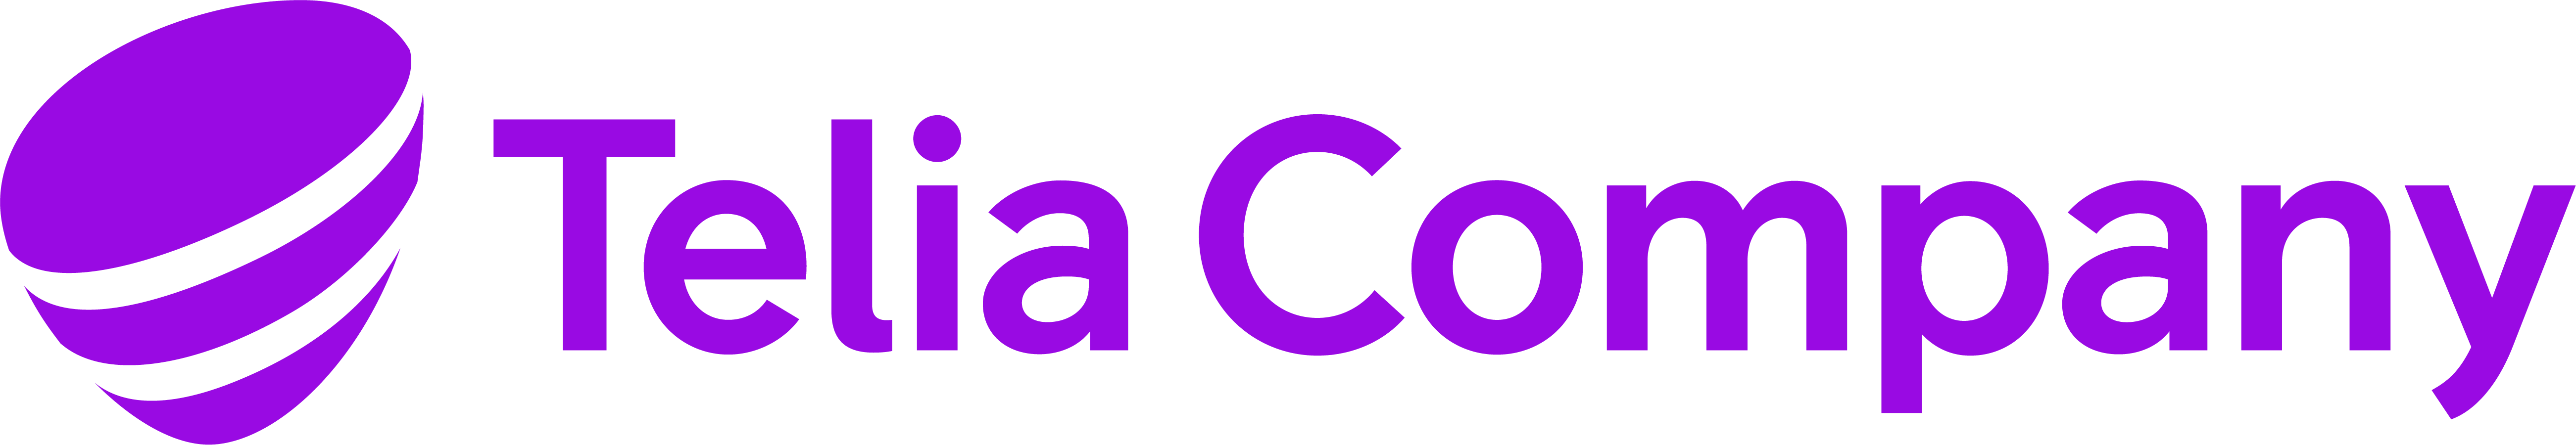 Telia logotyp